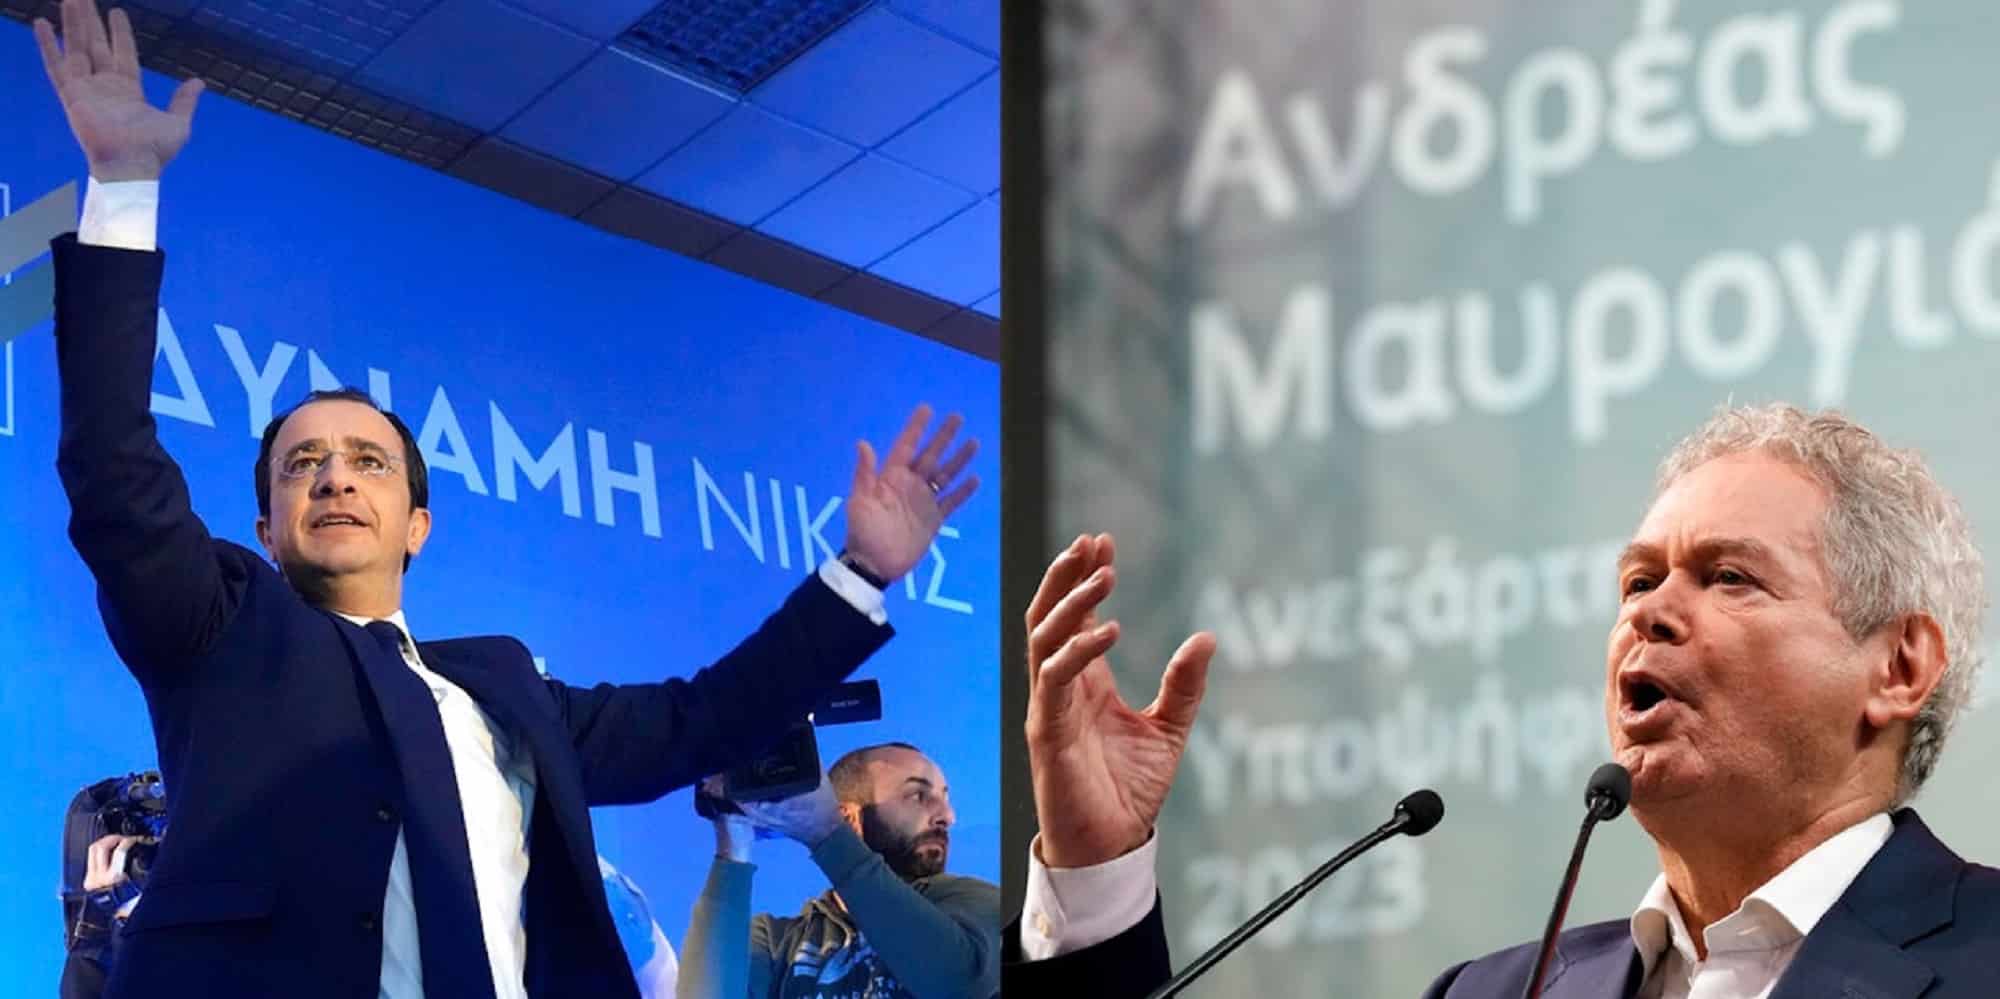 Νίκος Χριστοδουλίδης και Ανδρέας Μαυρογιάννης οι δυο υποψήφιοι στις προεδρικές εκλογές της Κύπρου